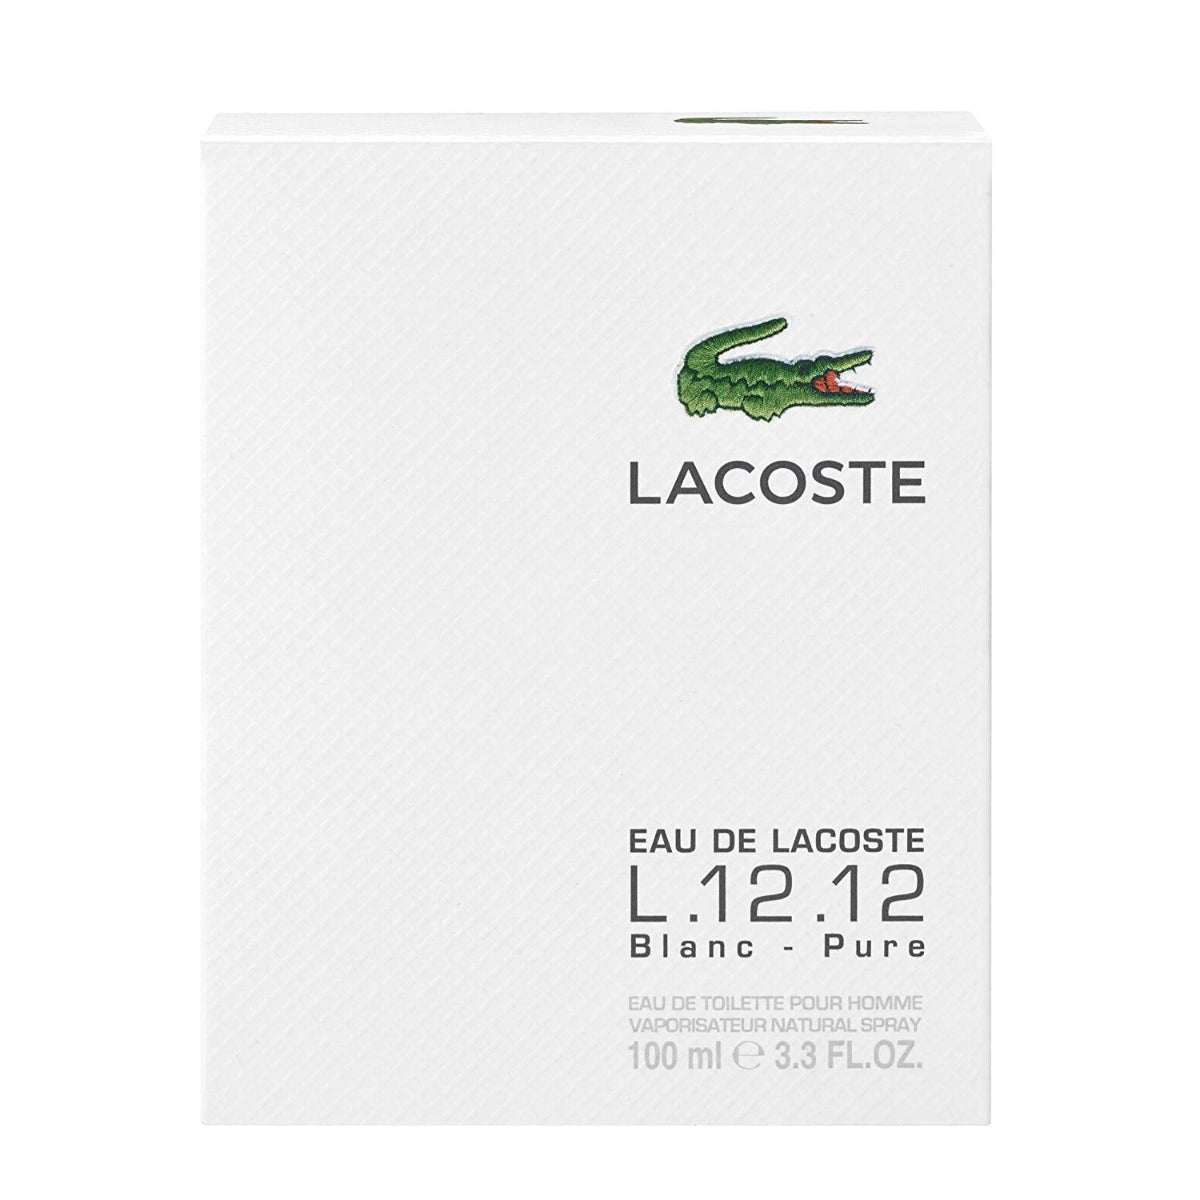 Eau De Lacoste L.12.12 Blanc by Lacoste for Men - Eau de Toilette, 100ml